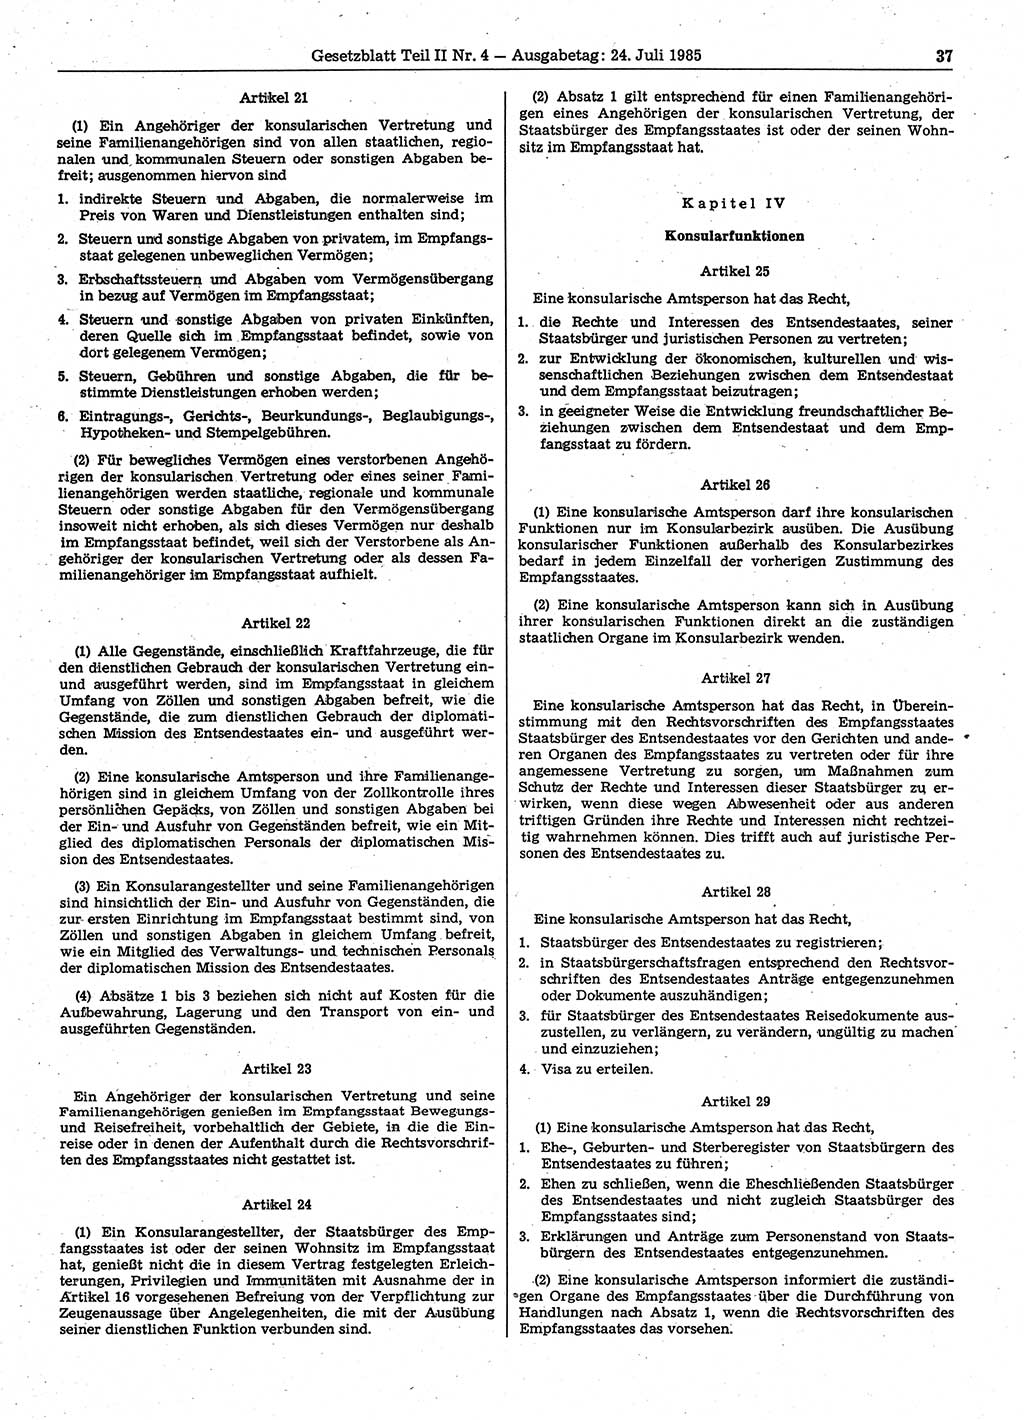 Gesetzblatt (GBl.) der Deutschen Demokratischen Republik (DDR) Teil ⅠⅠ 1985, Seite 37 (GBl. DDR ⅠⅠ 1985, S. 37)